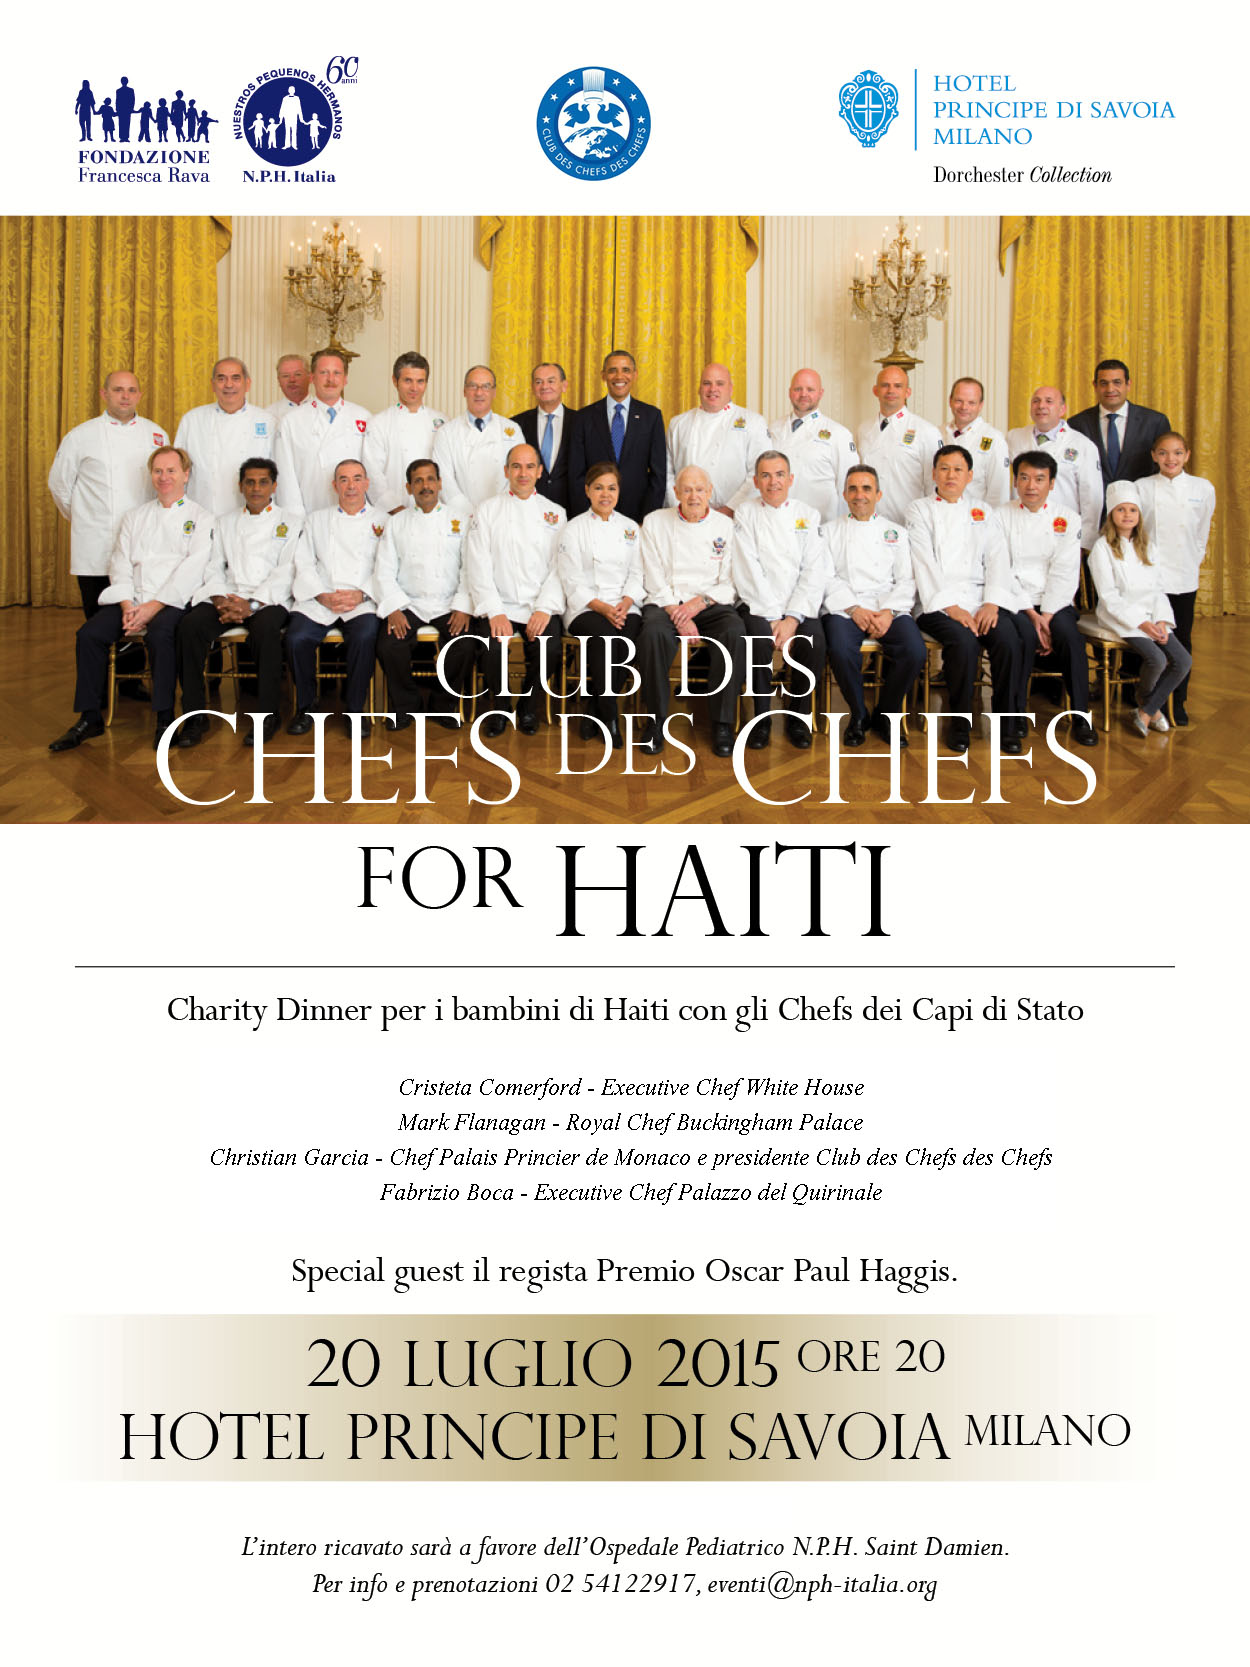 20 luglio, gli Chefs des Chefs al Principe di Savoia per i bambini di Haiti